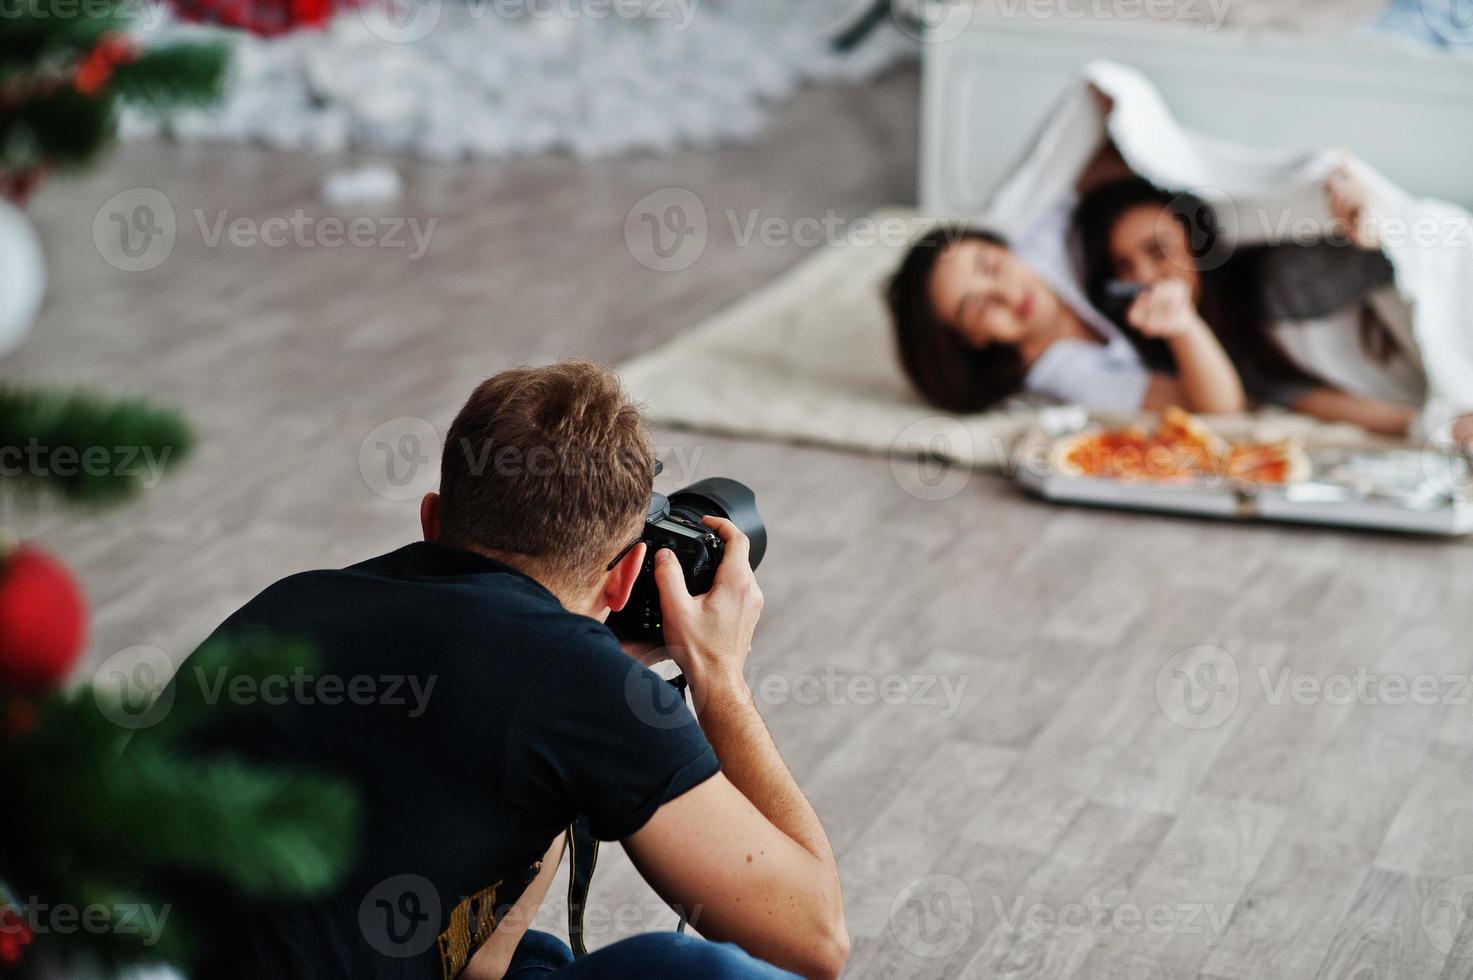 man fotograaf schiet op studio tweeling meisjes die pizza eten. professionele fotograaf op het werk. foto